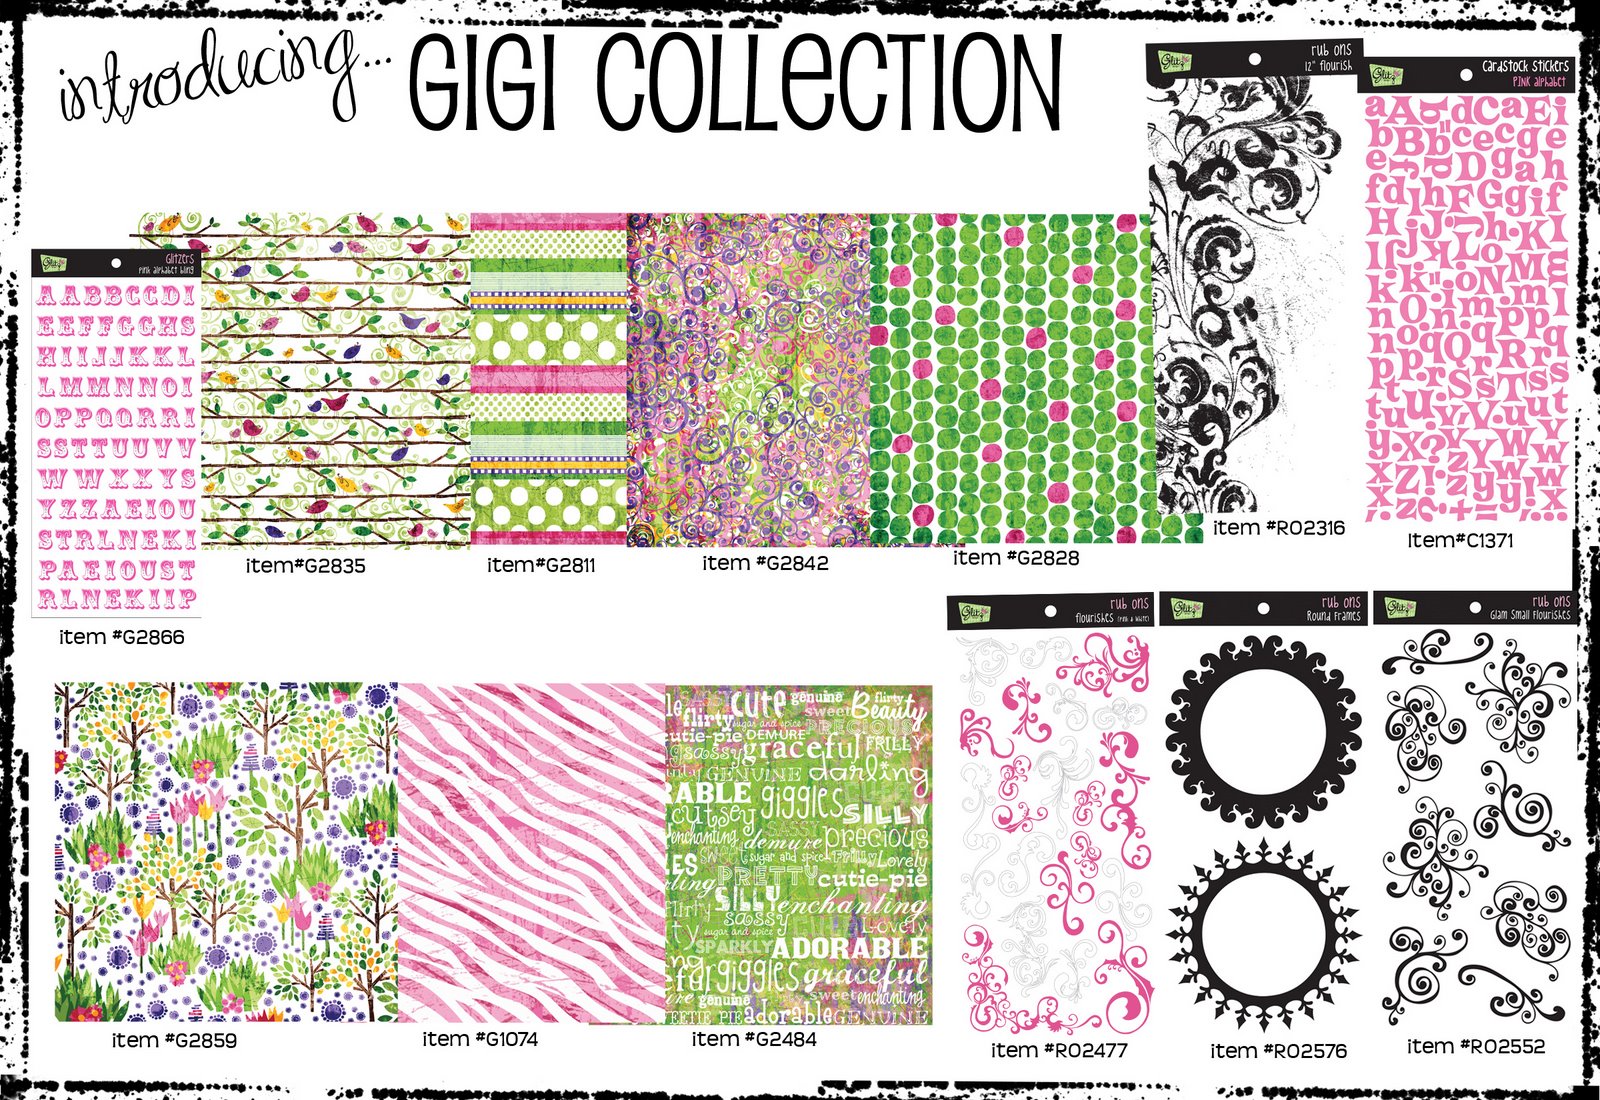 [Gigi+Collection.jpeg]